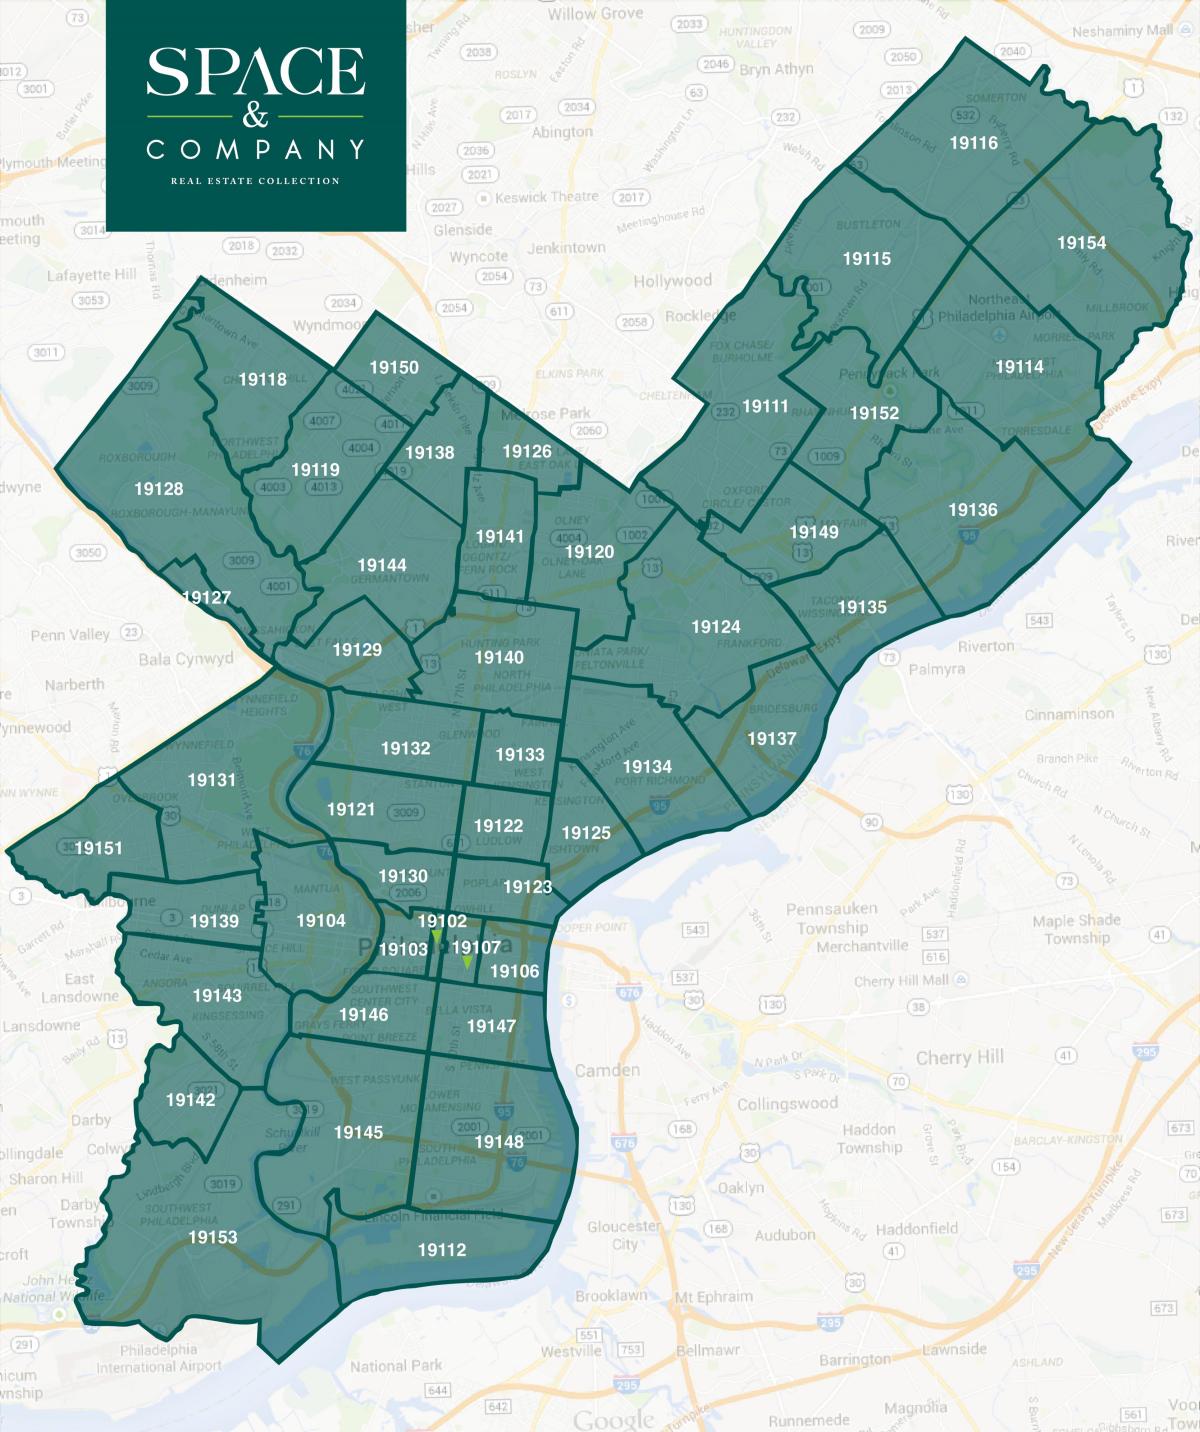 mapa do centro da cidade de Filadélfia código postal